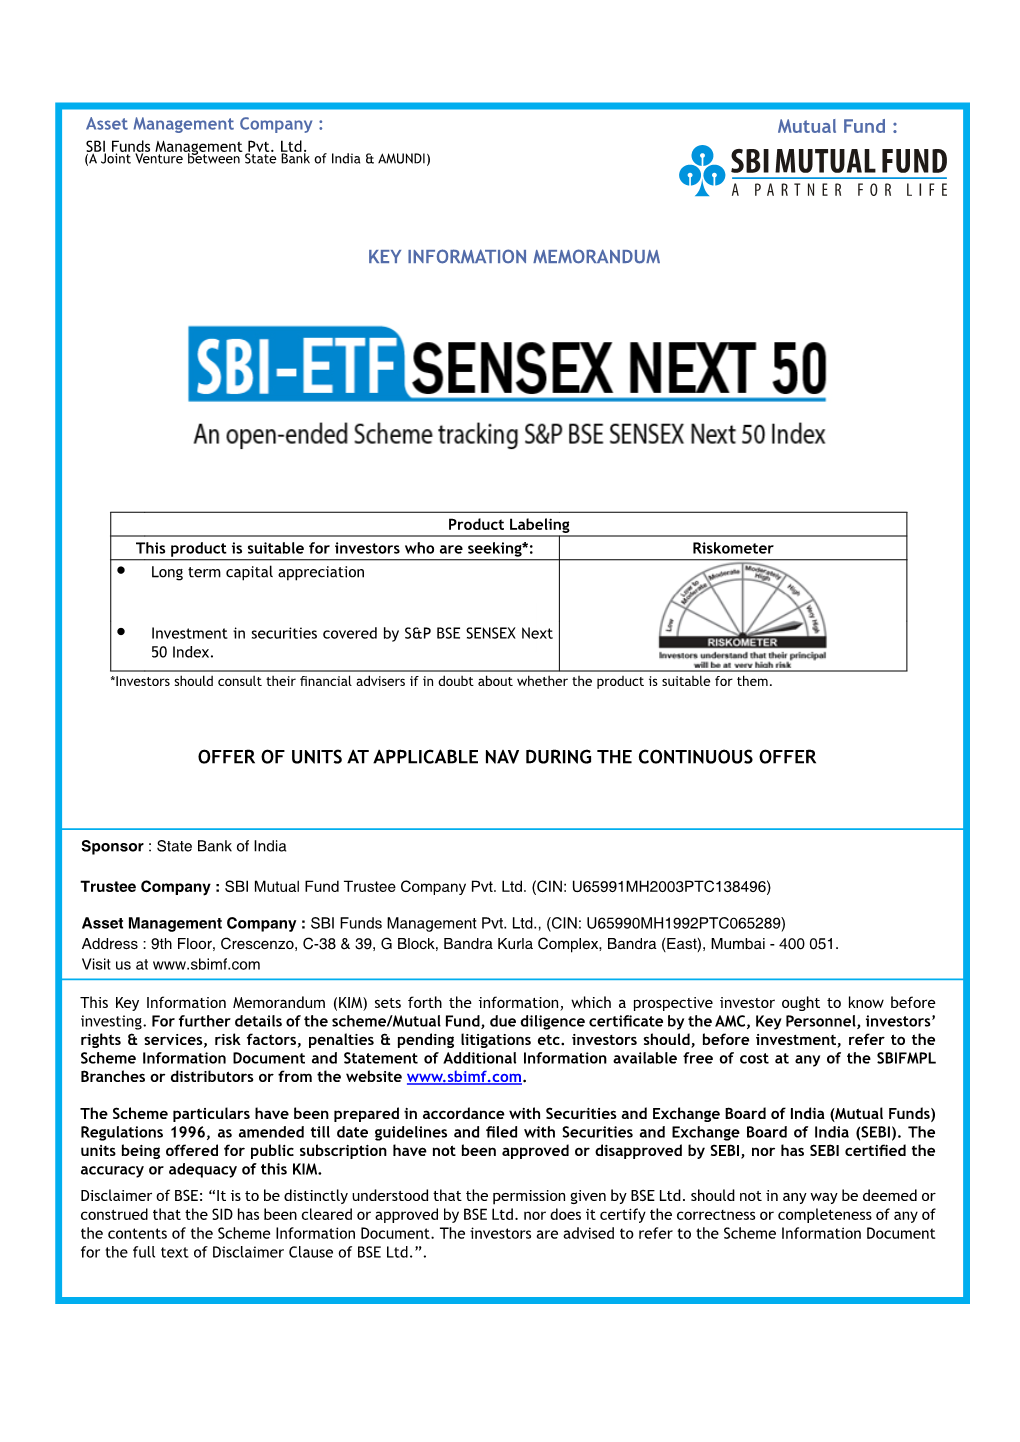 SBI ETF Sensex Next 50